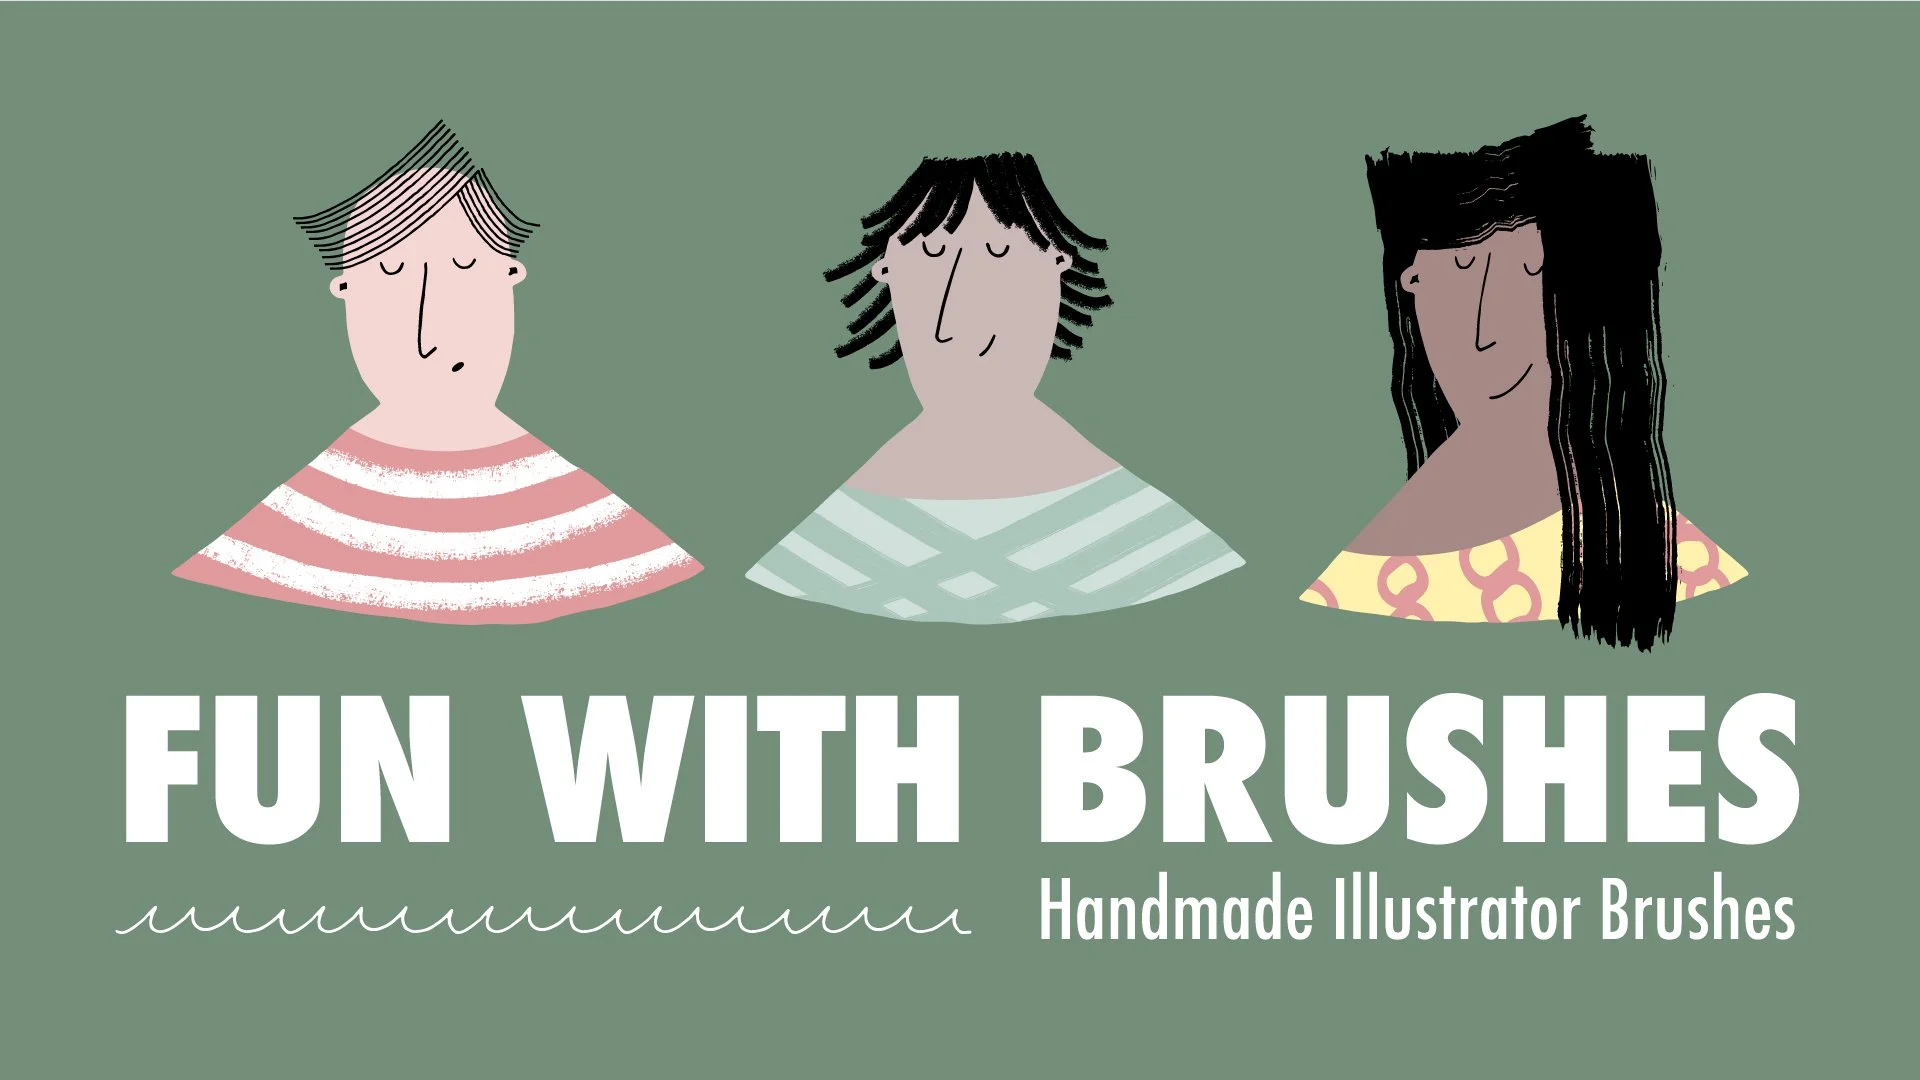 آموزش سرگرمی با براش ها: براش های تصویرساز دست ساز ایجاد کنید